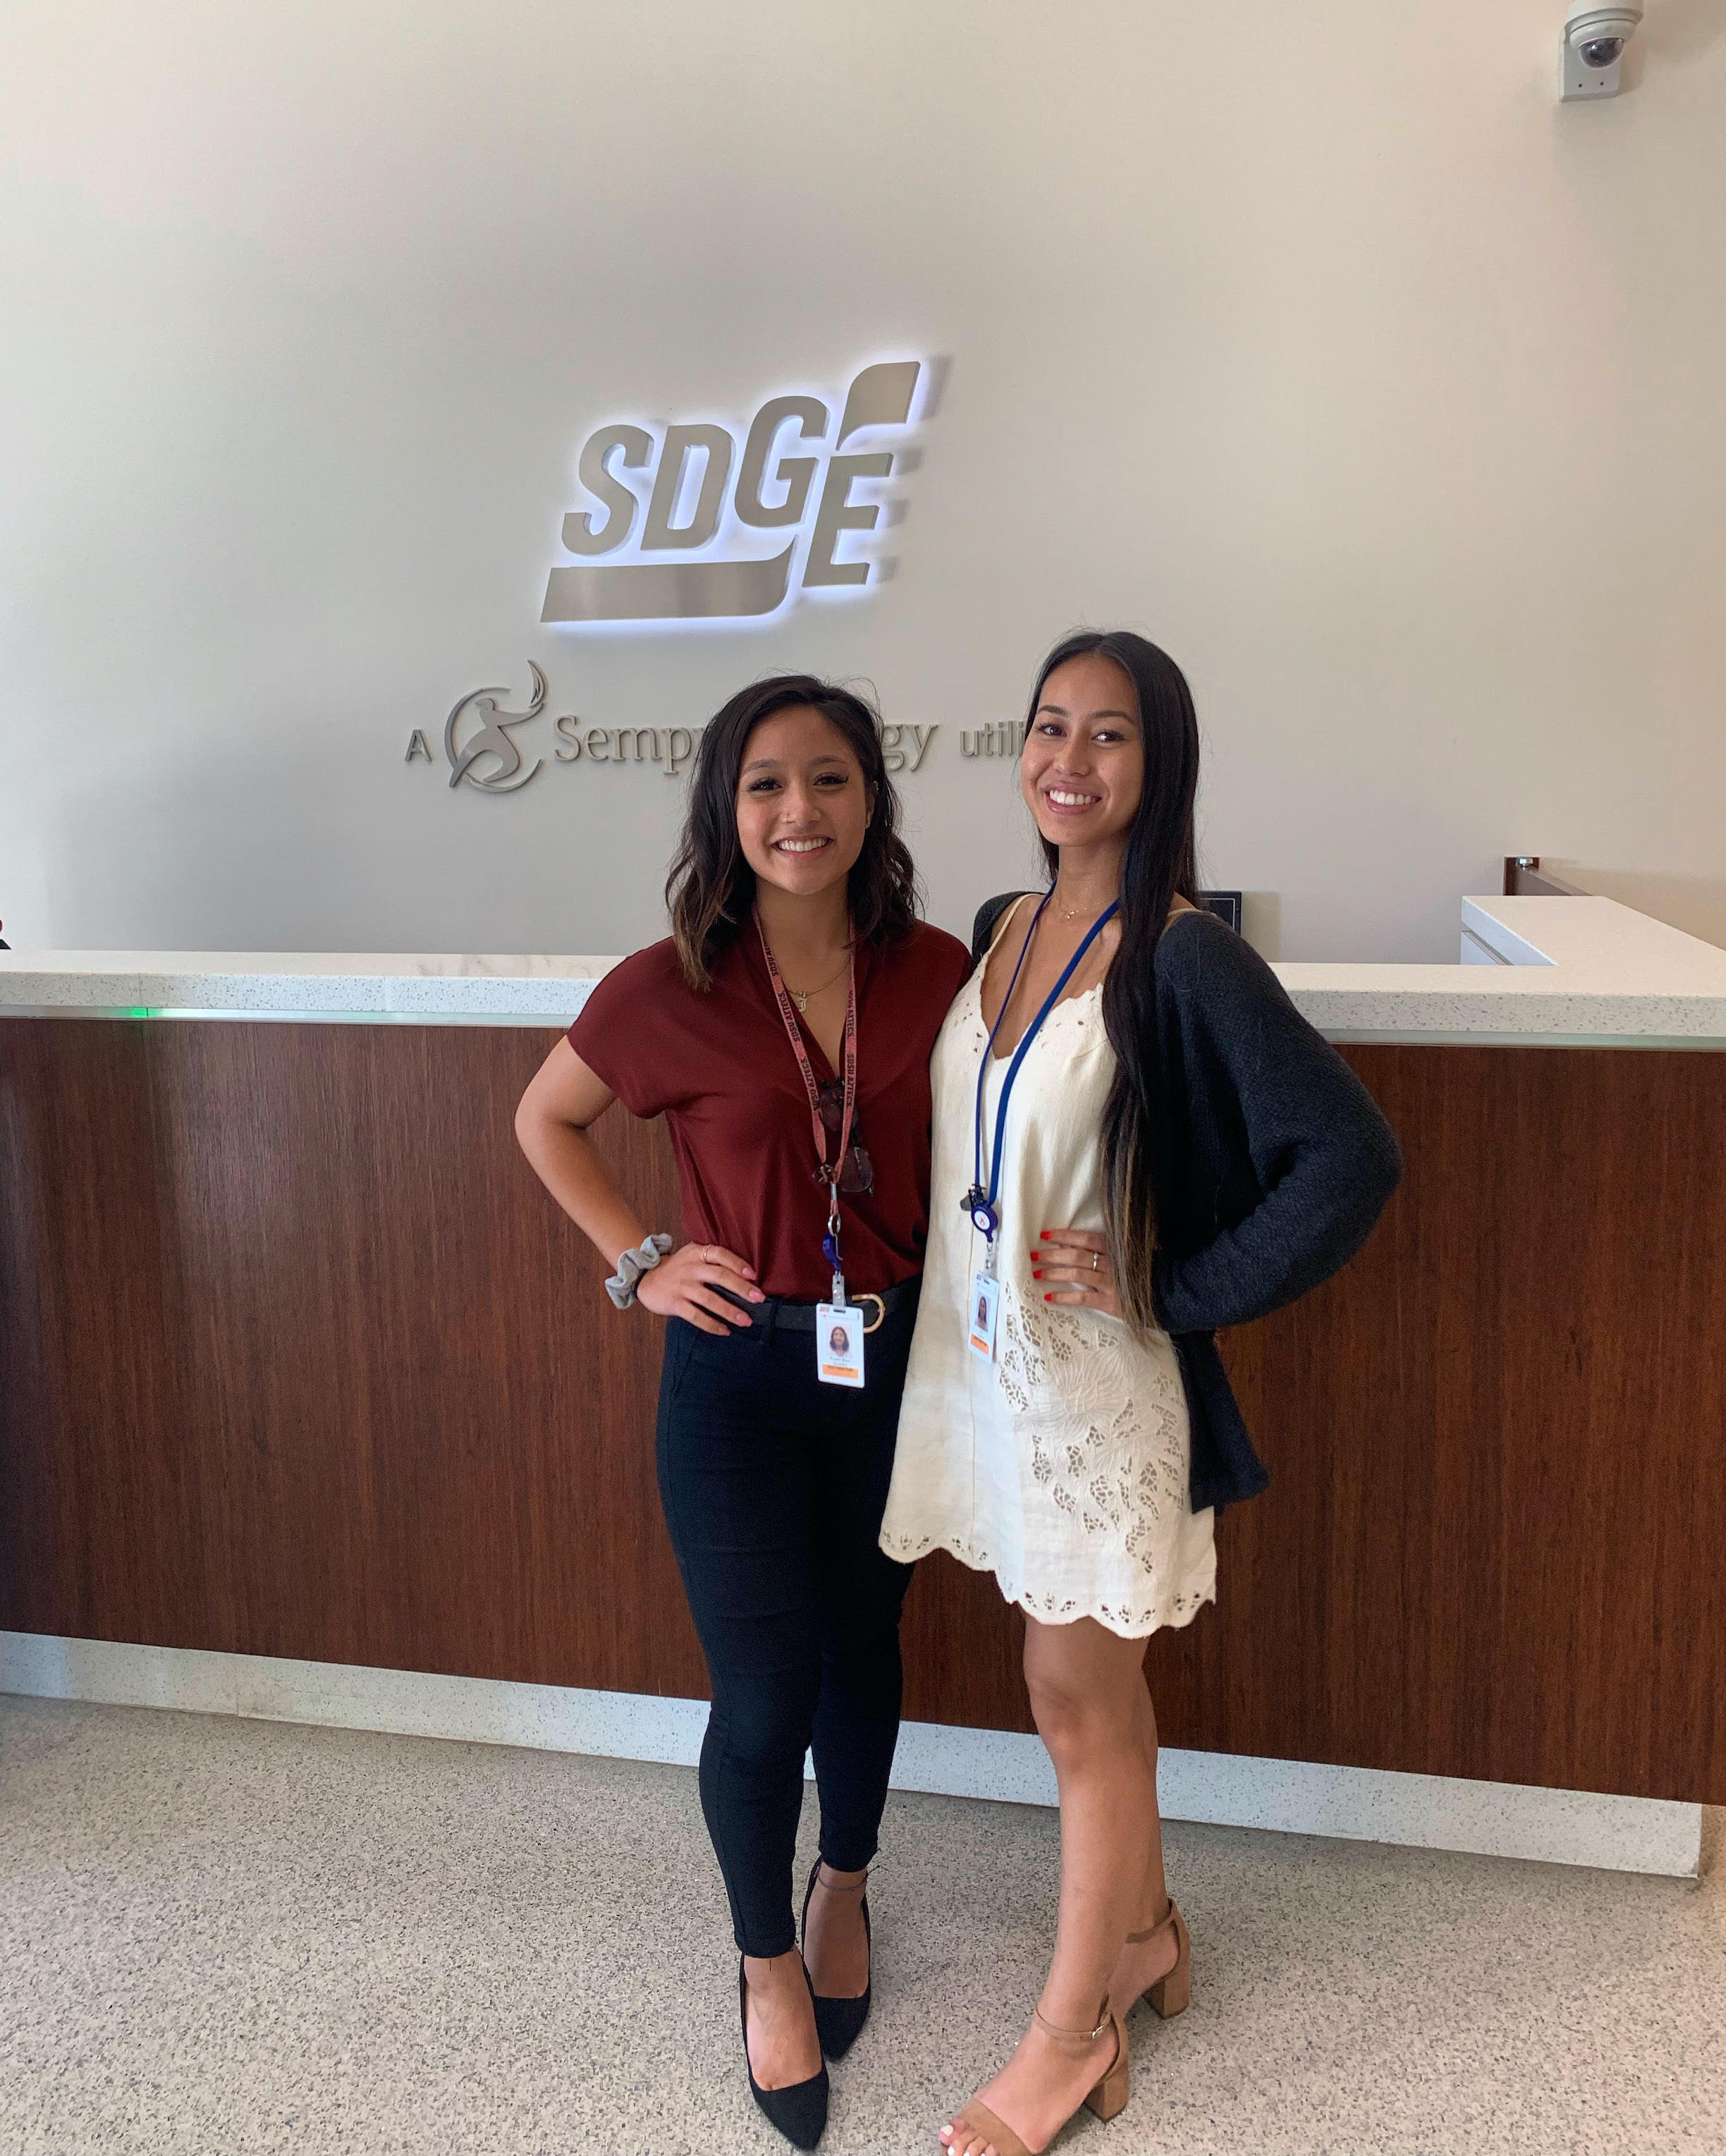 Krystal Gonzalez with an SDG&E colleague